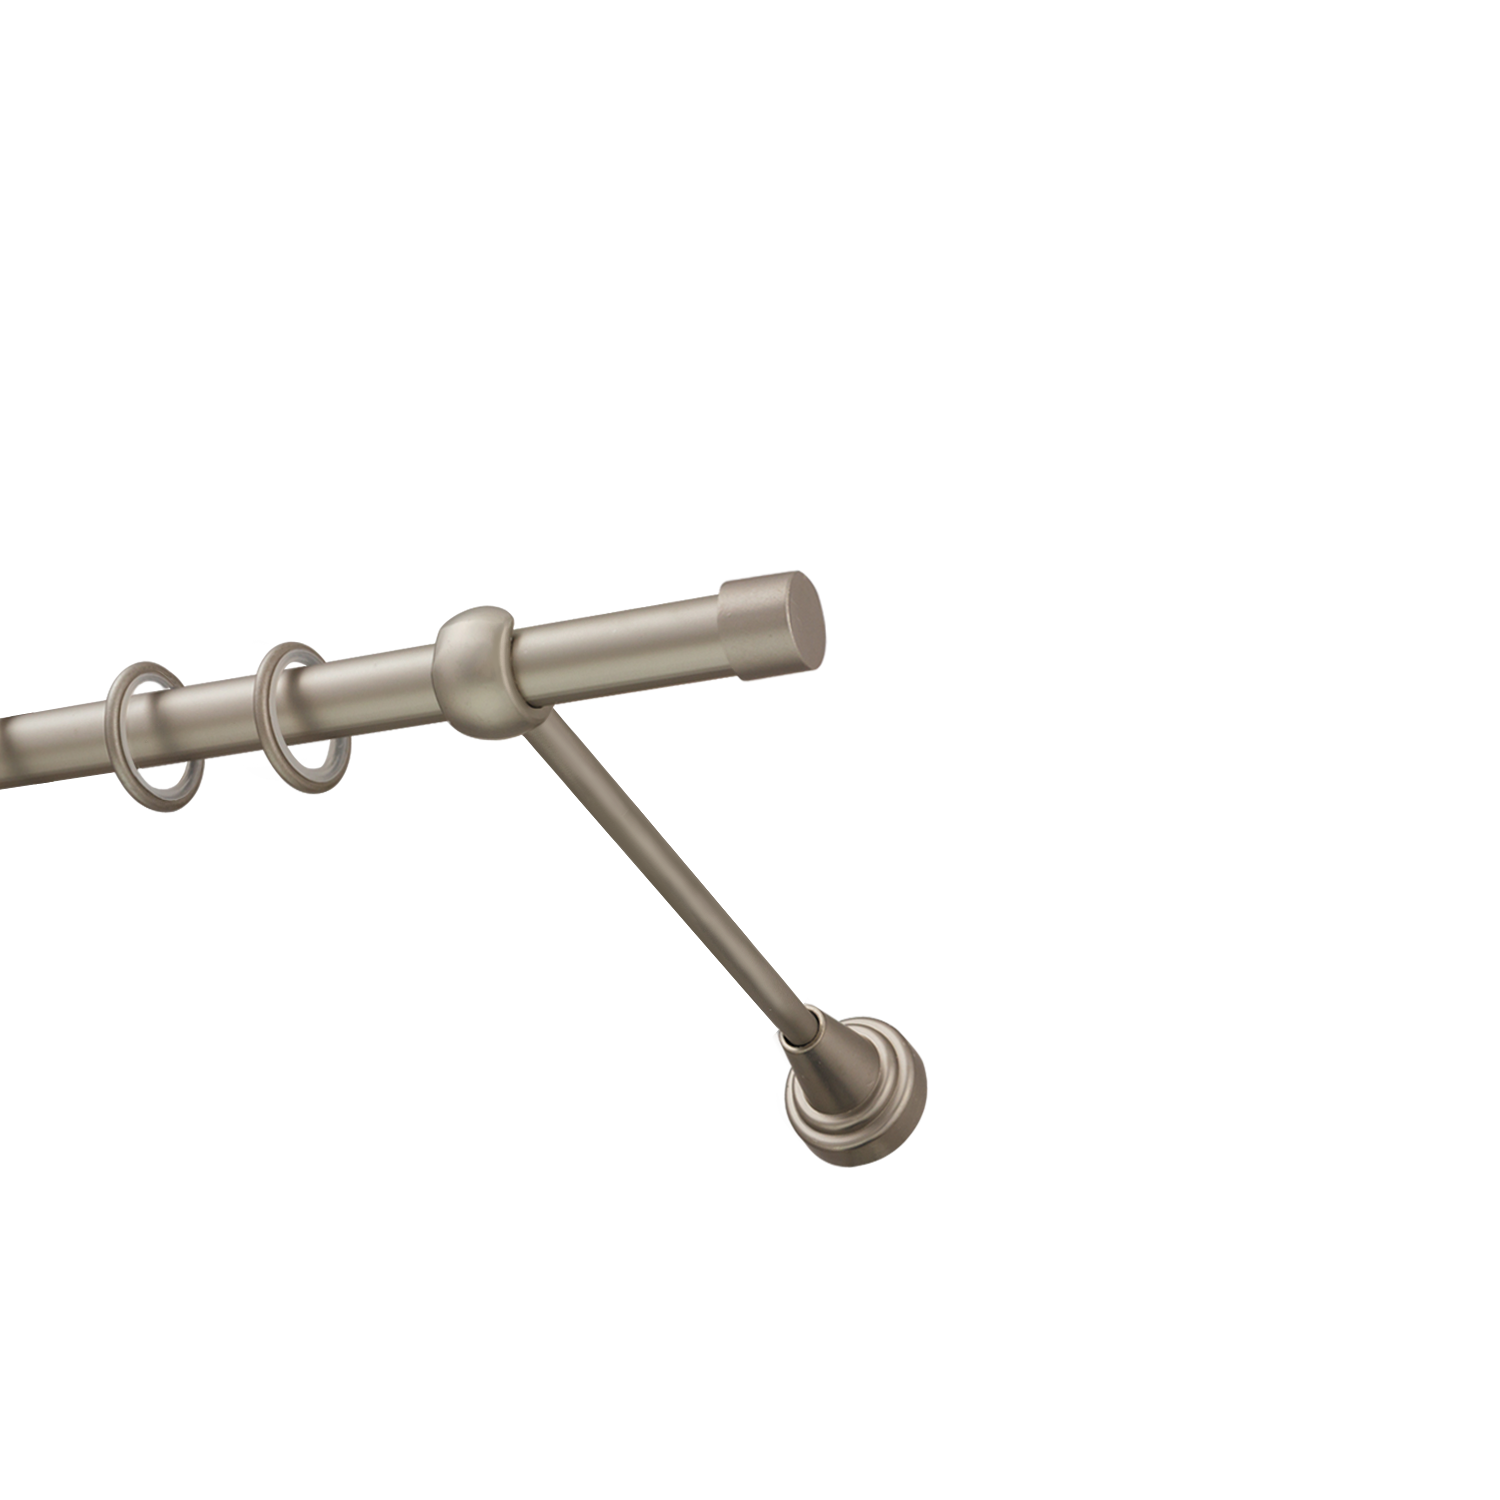 Металлический карниз для штор Заглушка, однорядный 16 мм, сталь, гладкая штанга, длина 240 см - фото Wikidecor.ru